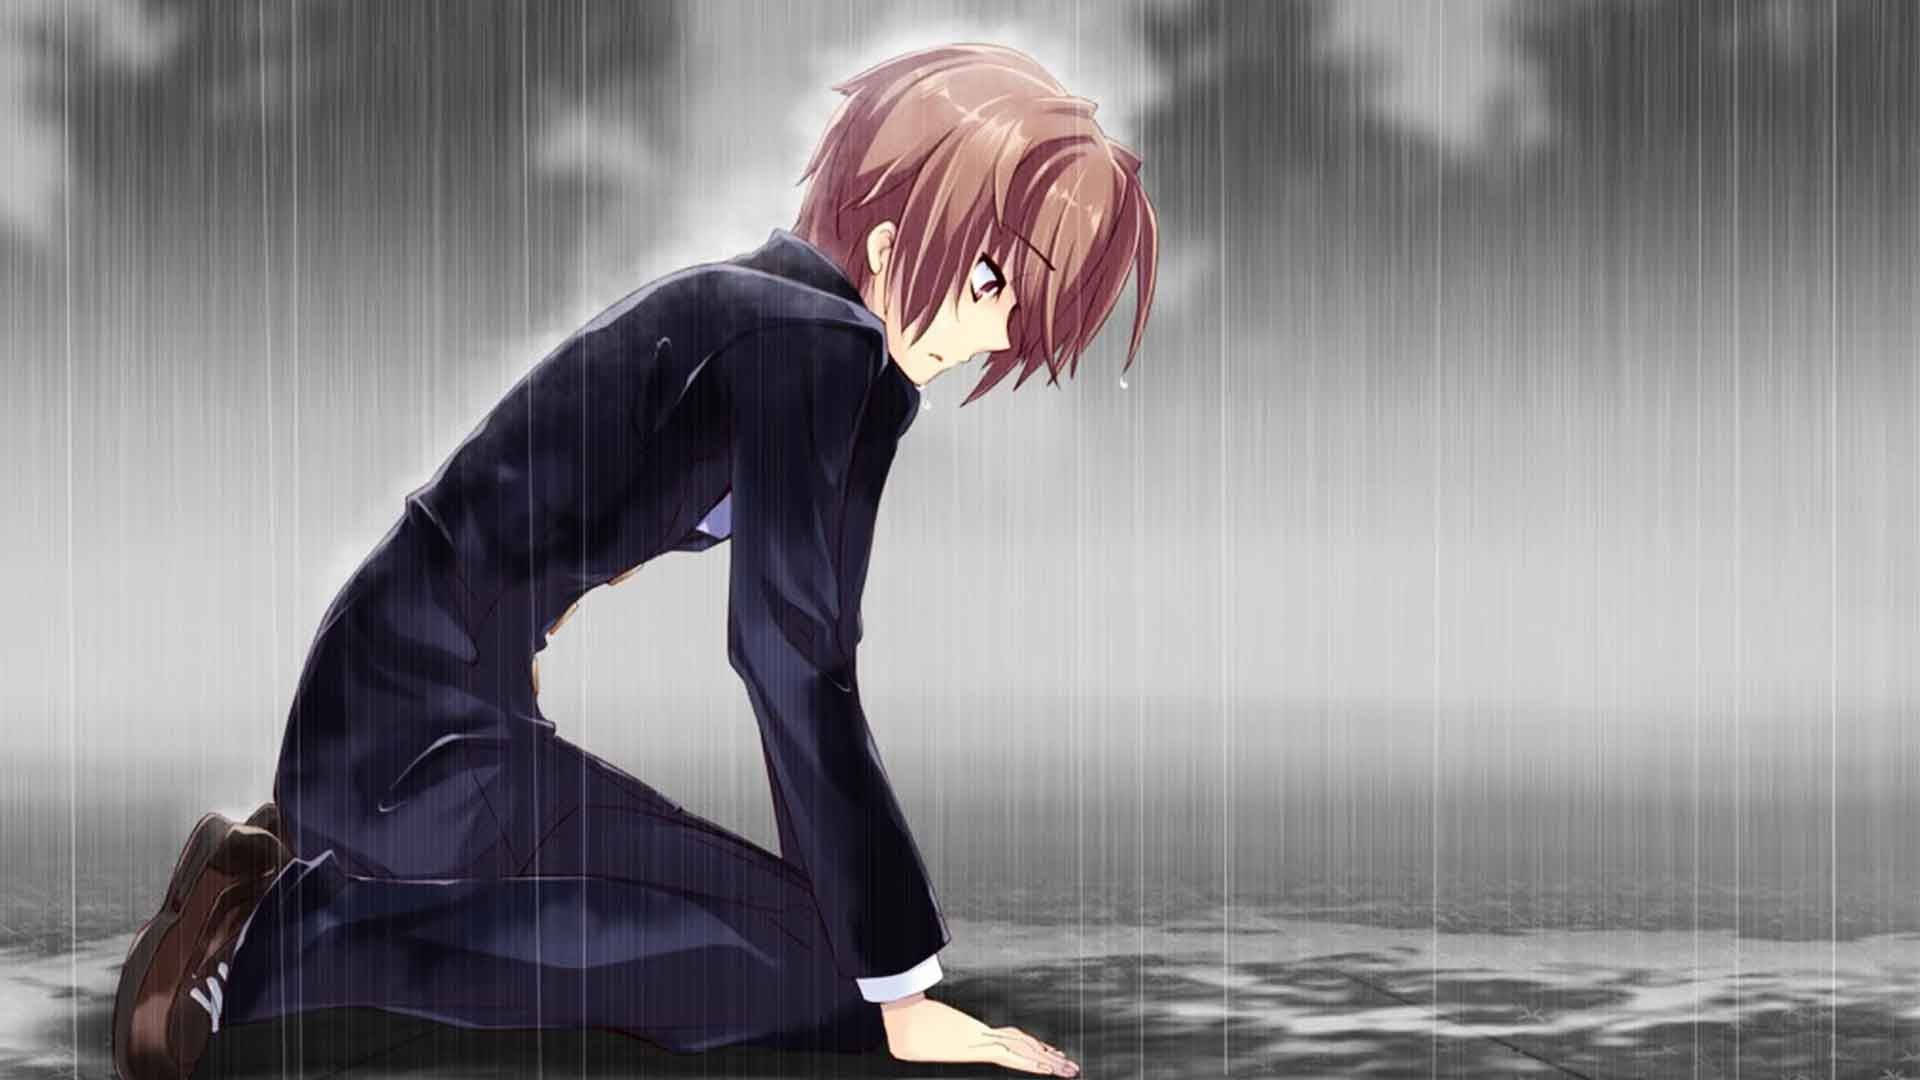 Anime Dreng Trist Aestetisk I Regnen Wallpaper